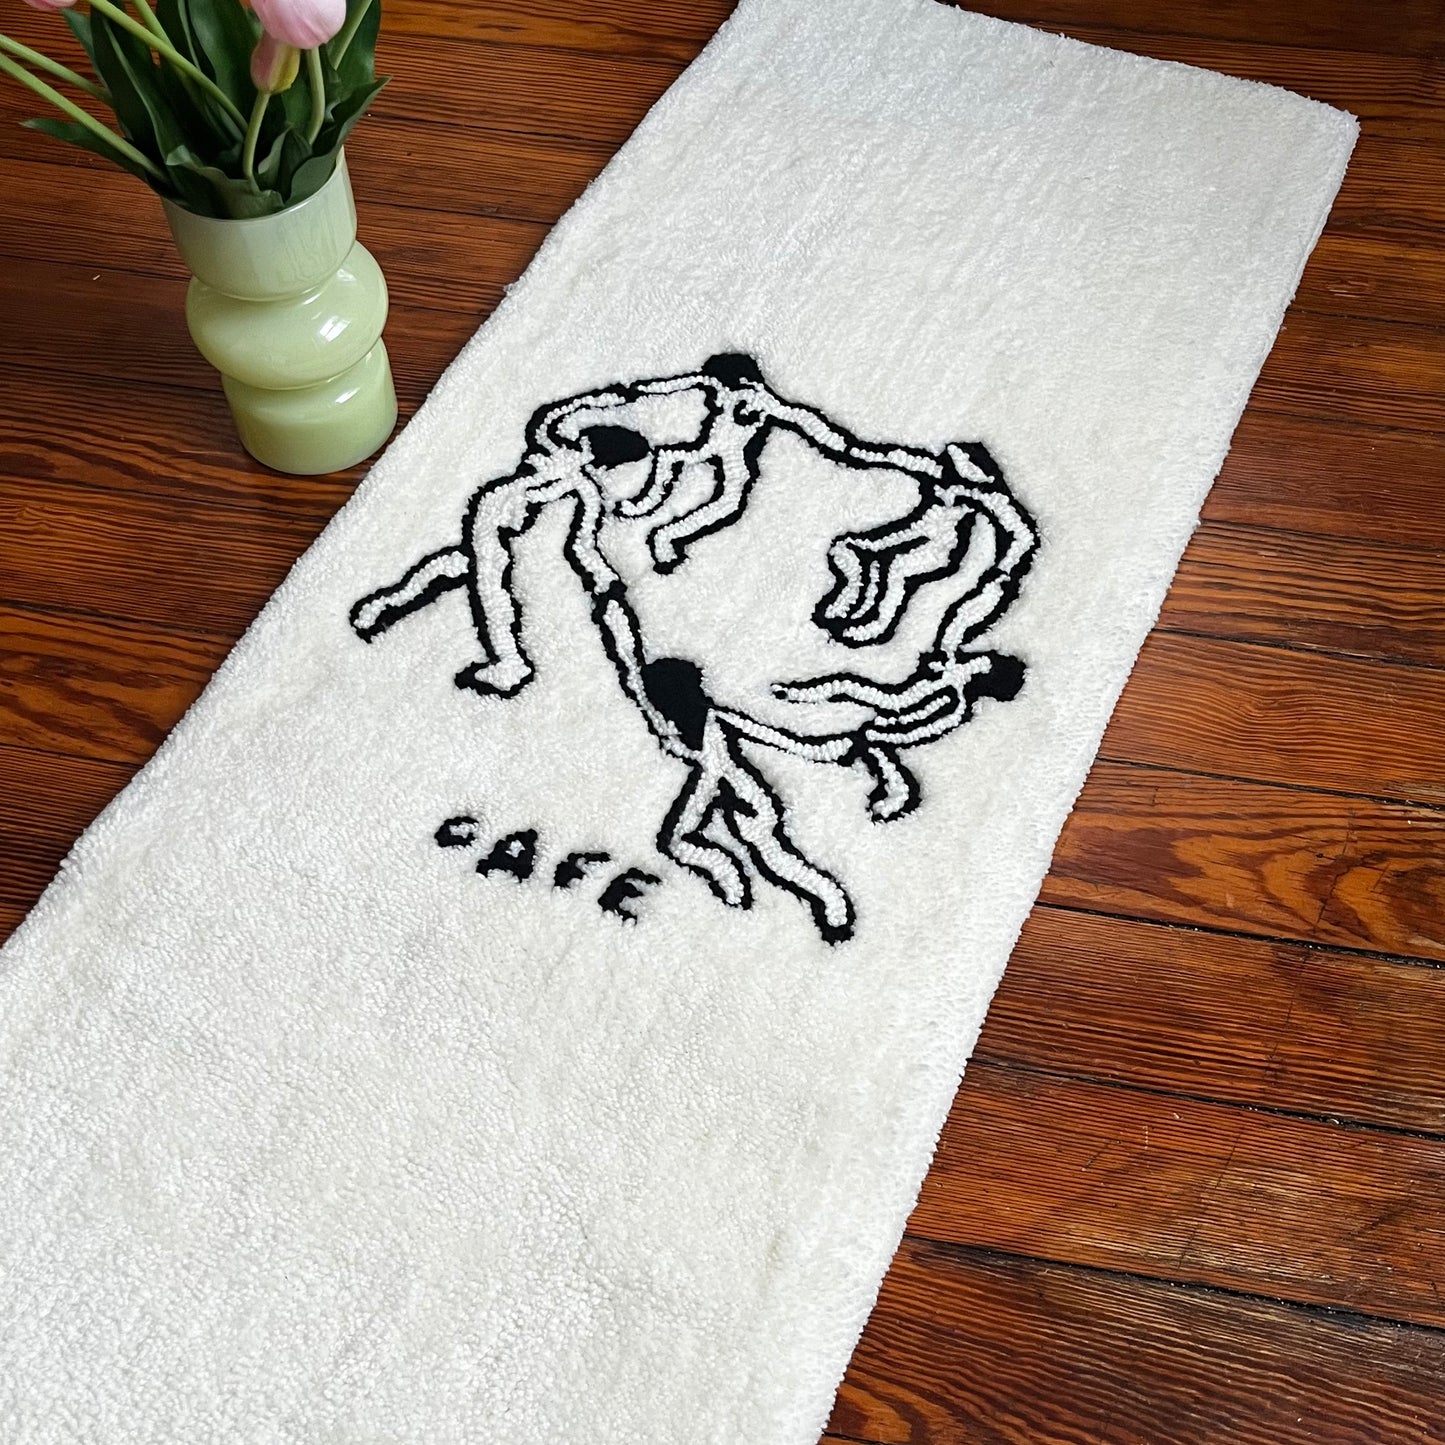 the original cafe skate deck rug!